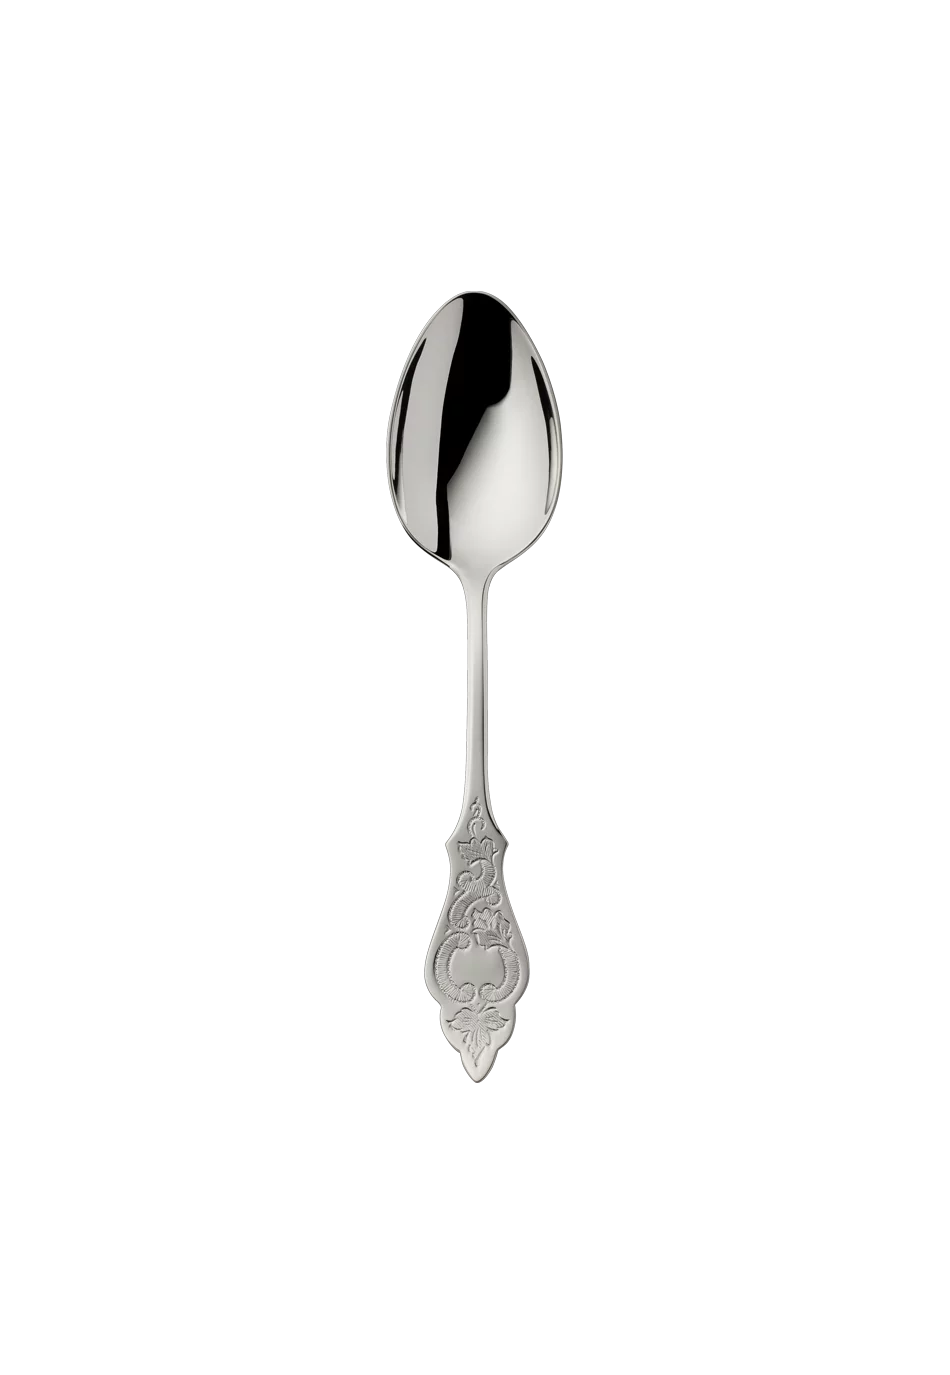 Ostfriesen Children's Spoon (150g massive silverplated)